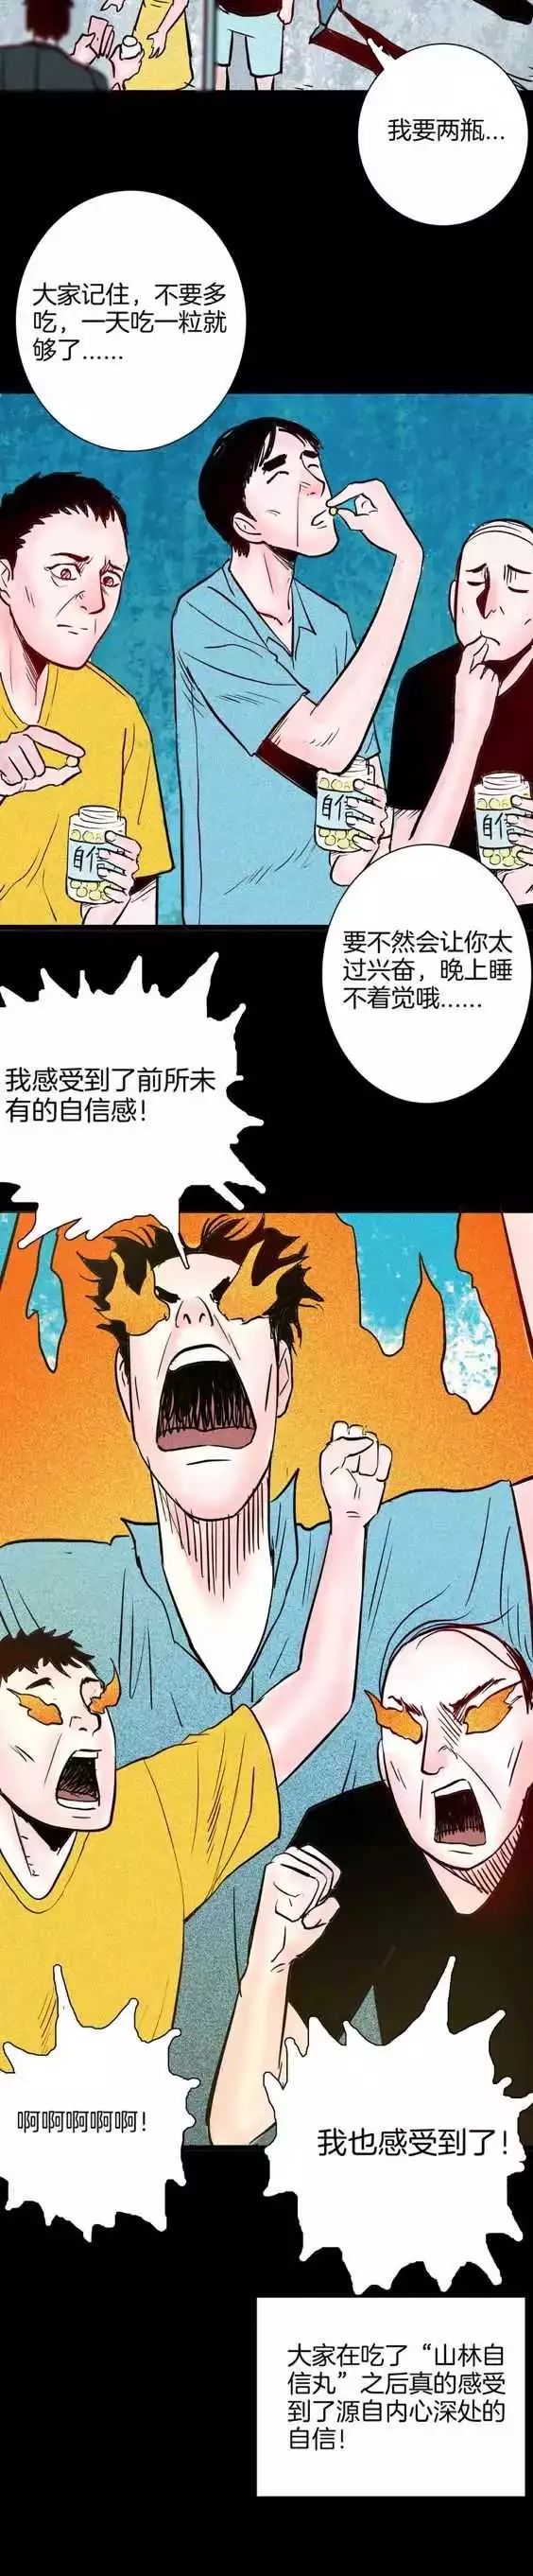 恐怖漫畫丨藥丸 靈異 第20張